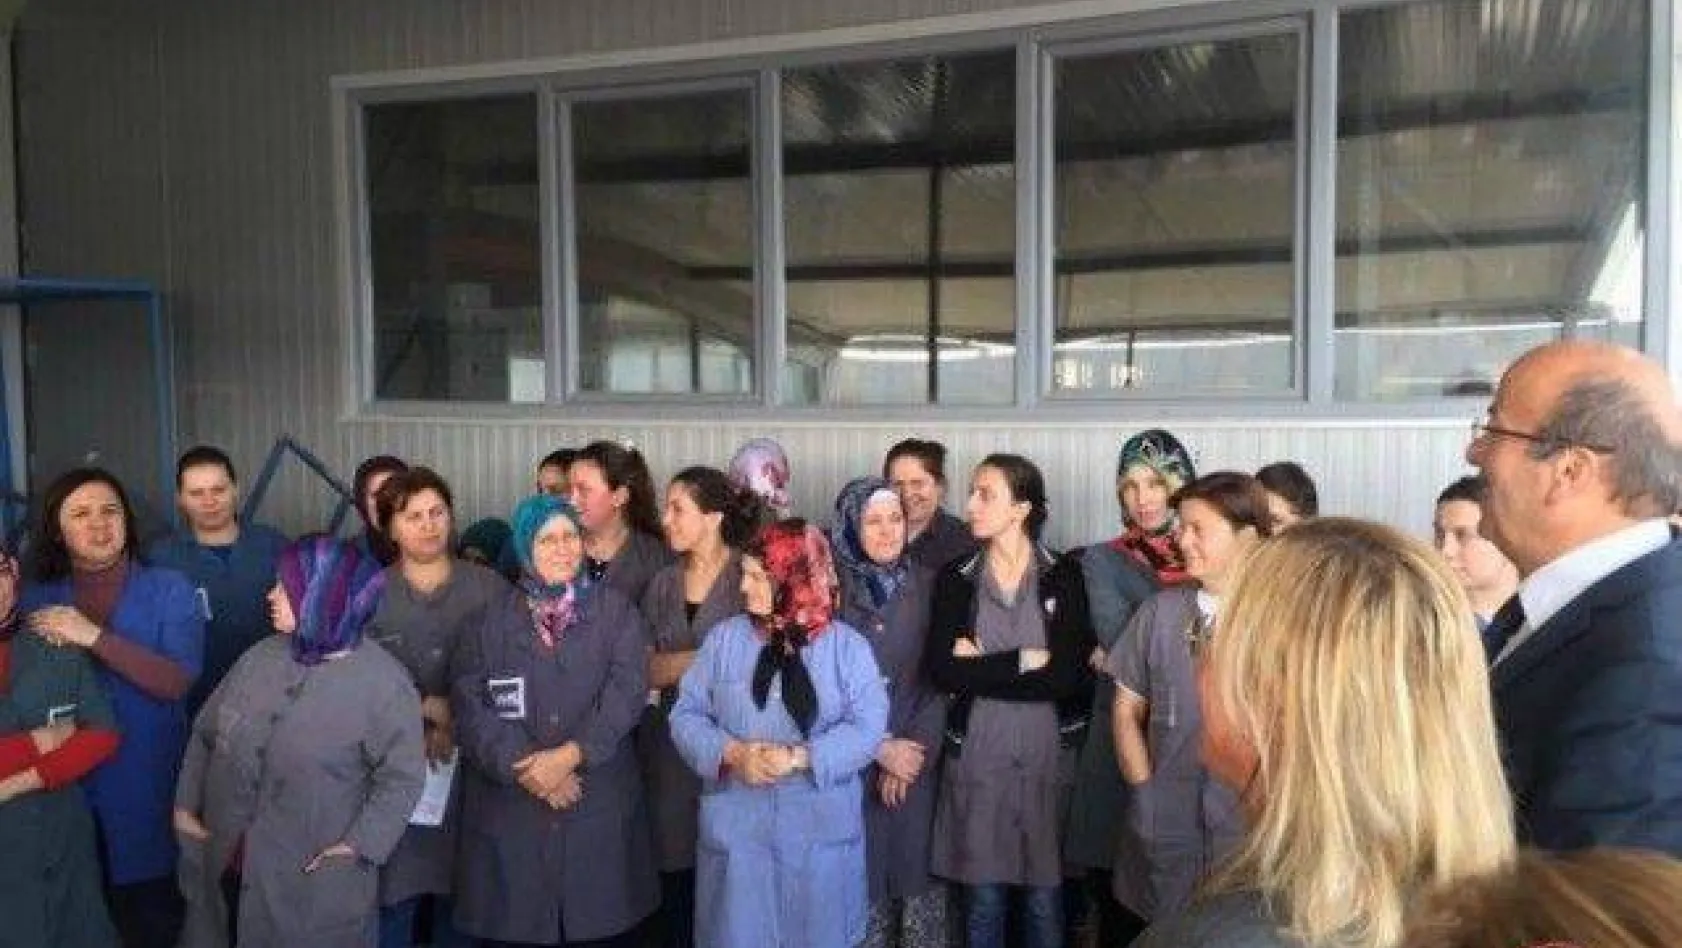 CHP Silivri seçim çalışmalarına devam ediyor